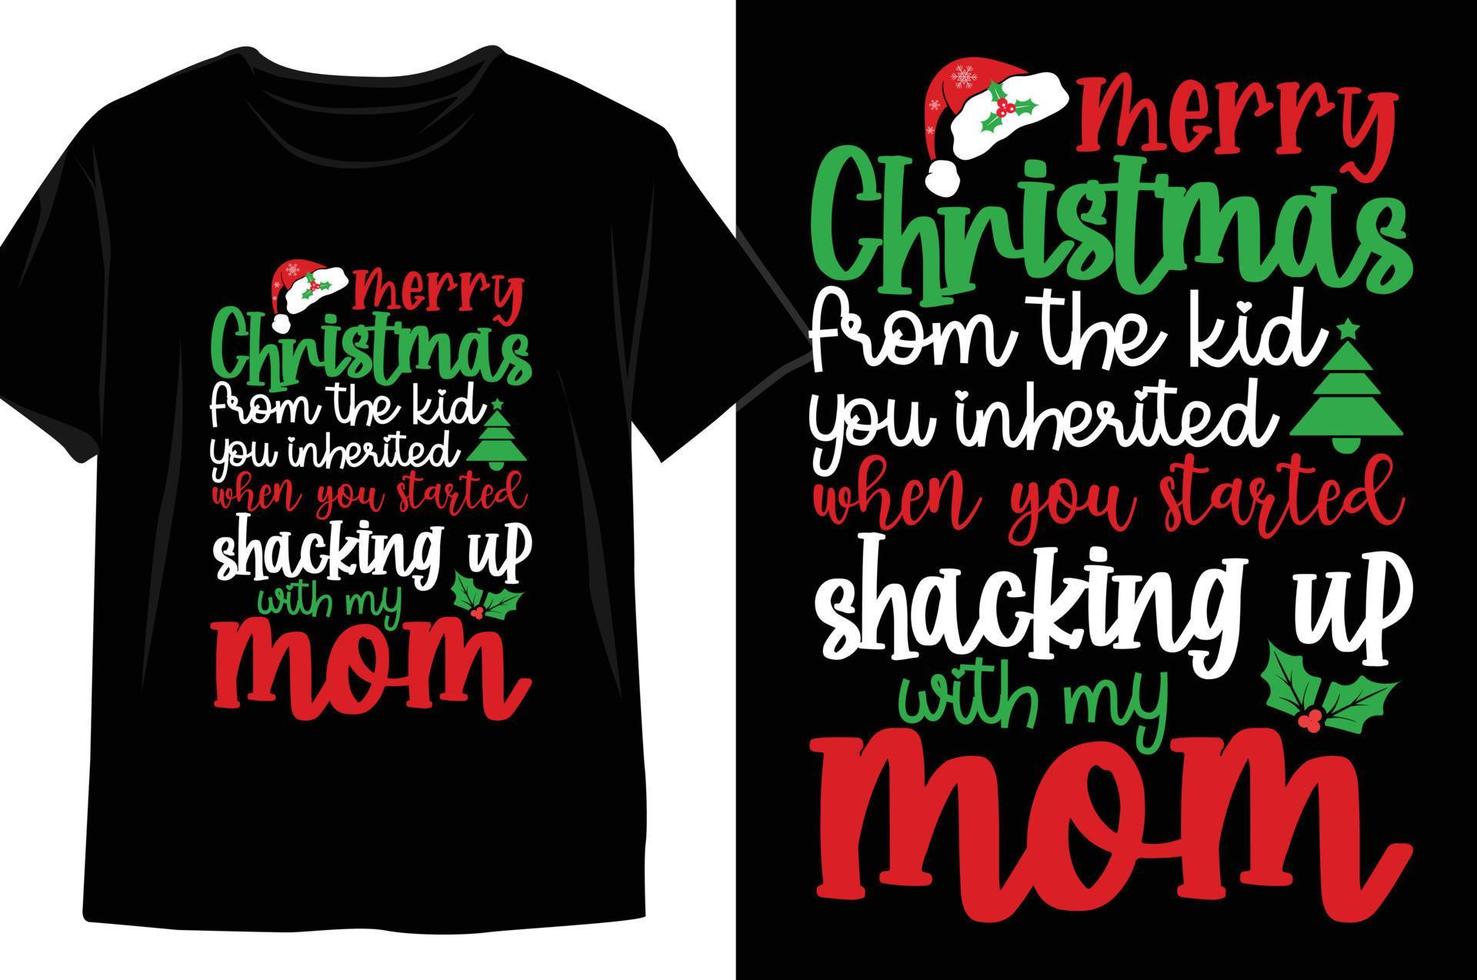 vrolijk Kerstmis van de kind u geërfd wanneer u begonnen schokkend omhoog met mijn mam Kerstmis t overhemd ontwerp vector